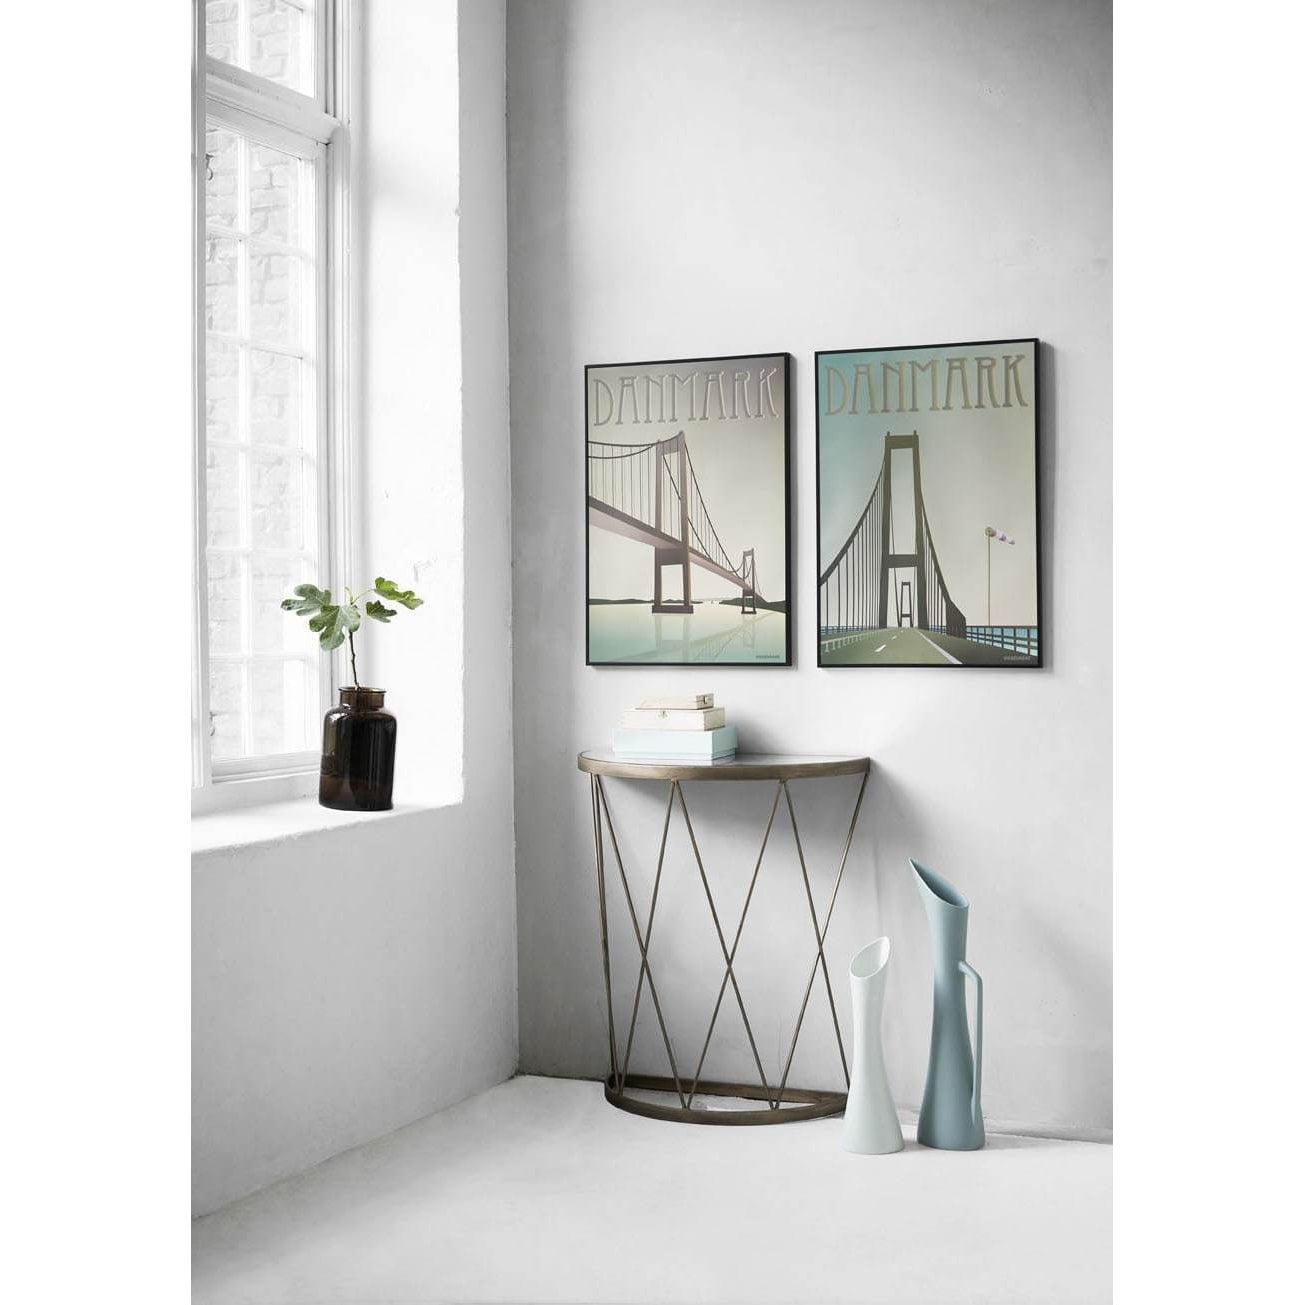 Vissevasse Denemarken Storebælts Bridge Poster, 15 x21 cm